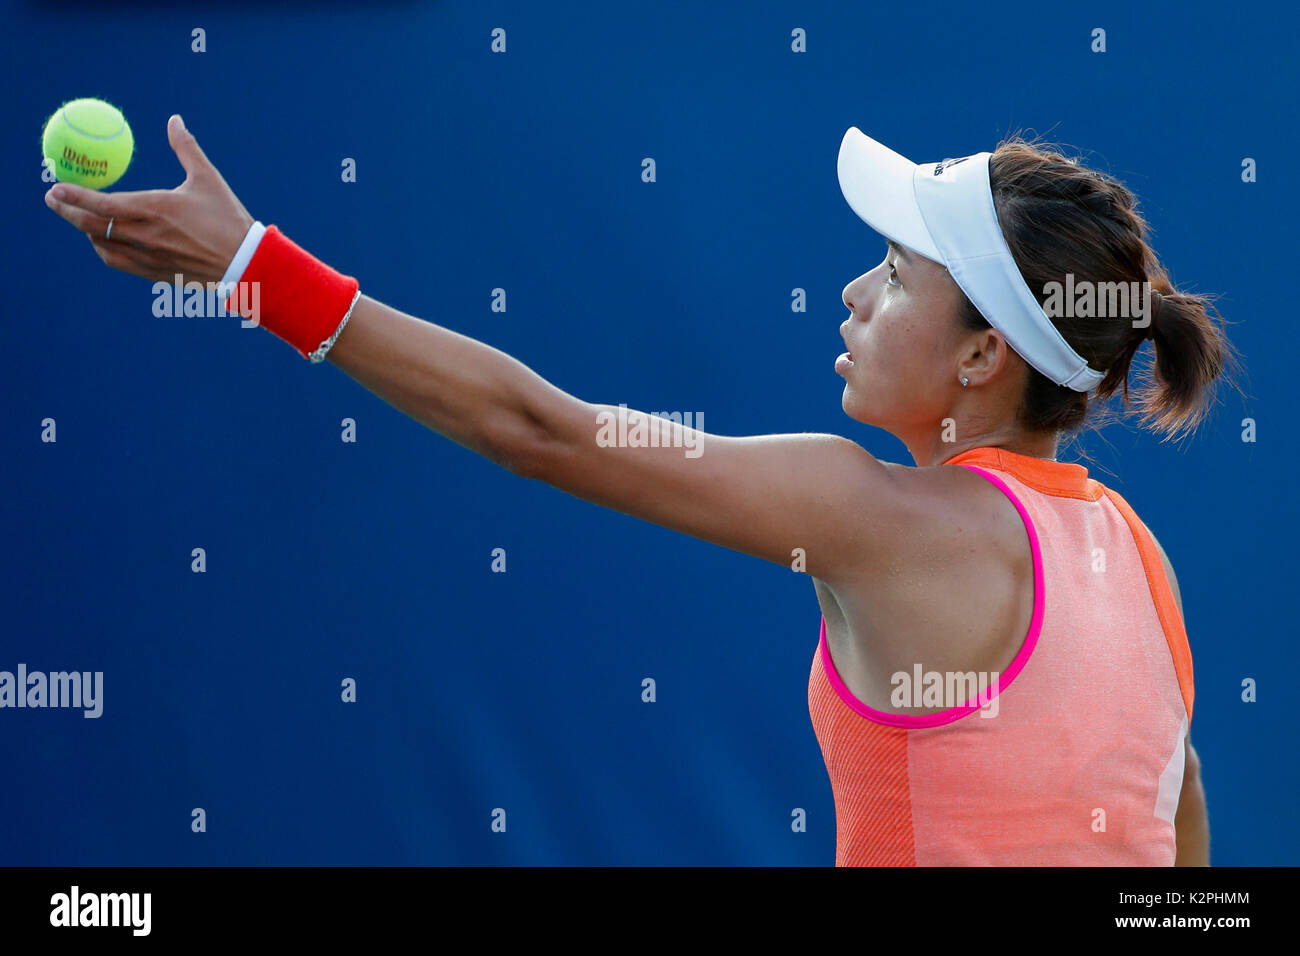 New York, USA. Août 30, 2017. Wang Qiang de la Chine sert au cours de la première série de match contre Daria Kasatkina de la Russie à l'US Open 2017 Tournoi de tennis à New York, États-Unis, 30 août 2017. Credit : Muzi Li/Xinhua/Alamy Live News Banque D'Images